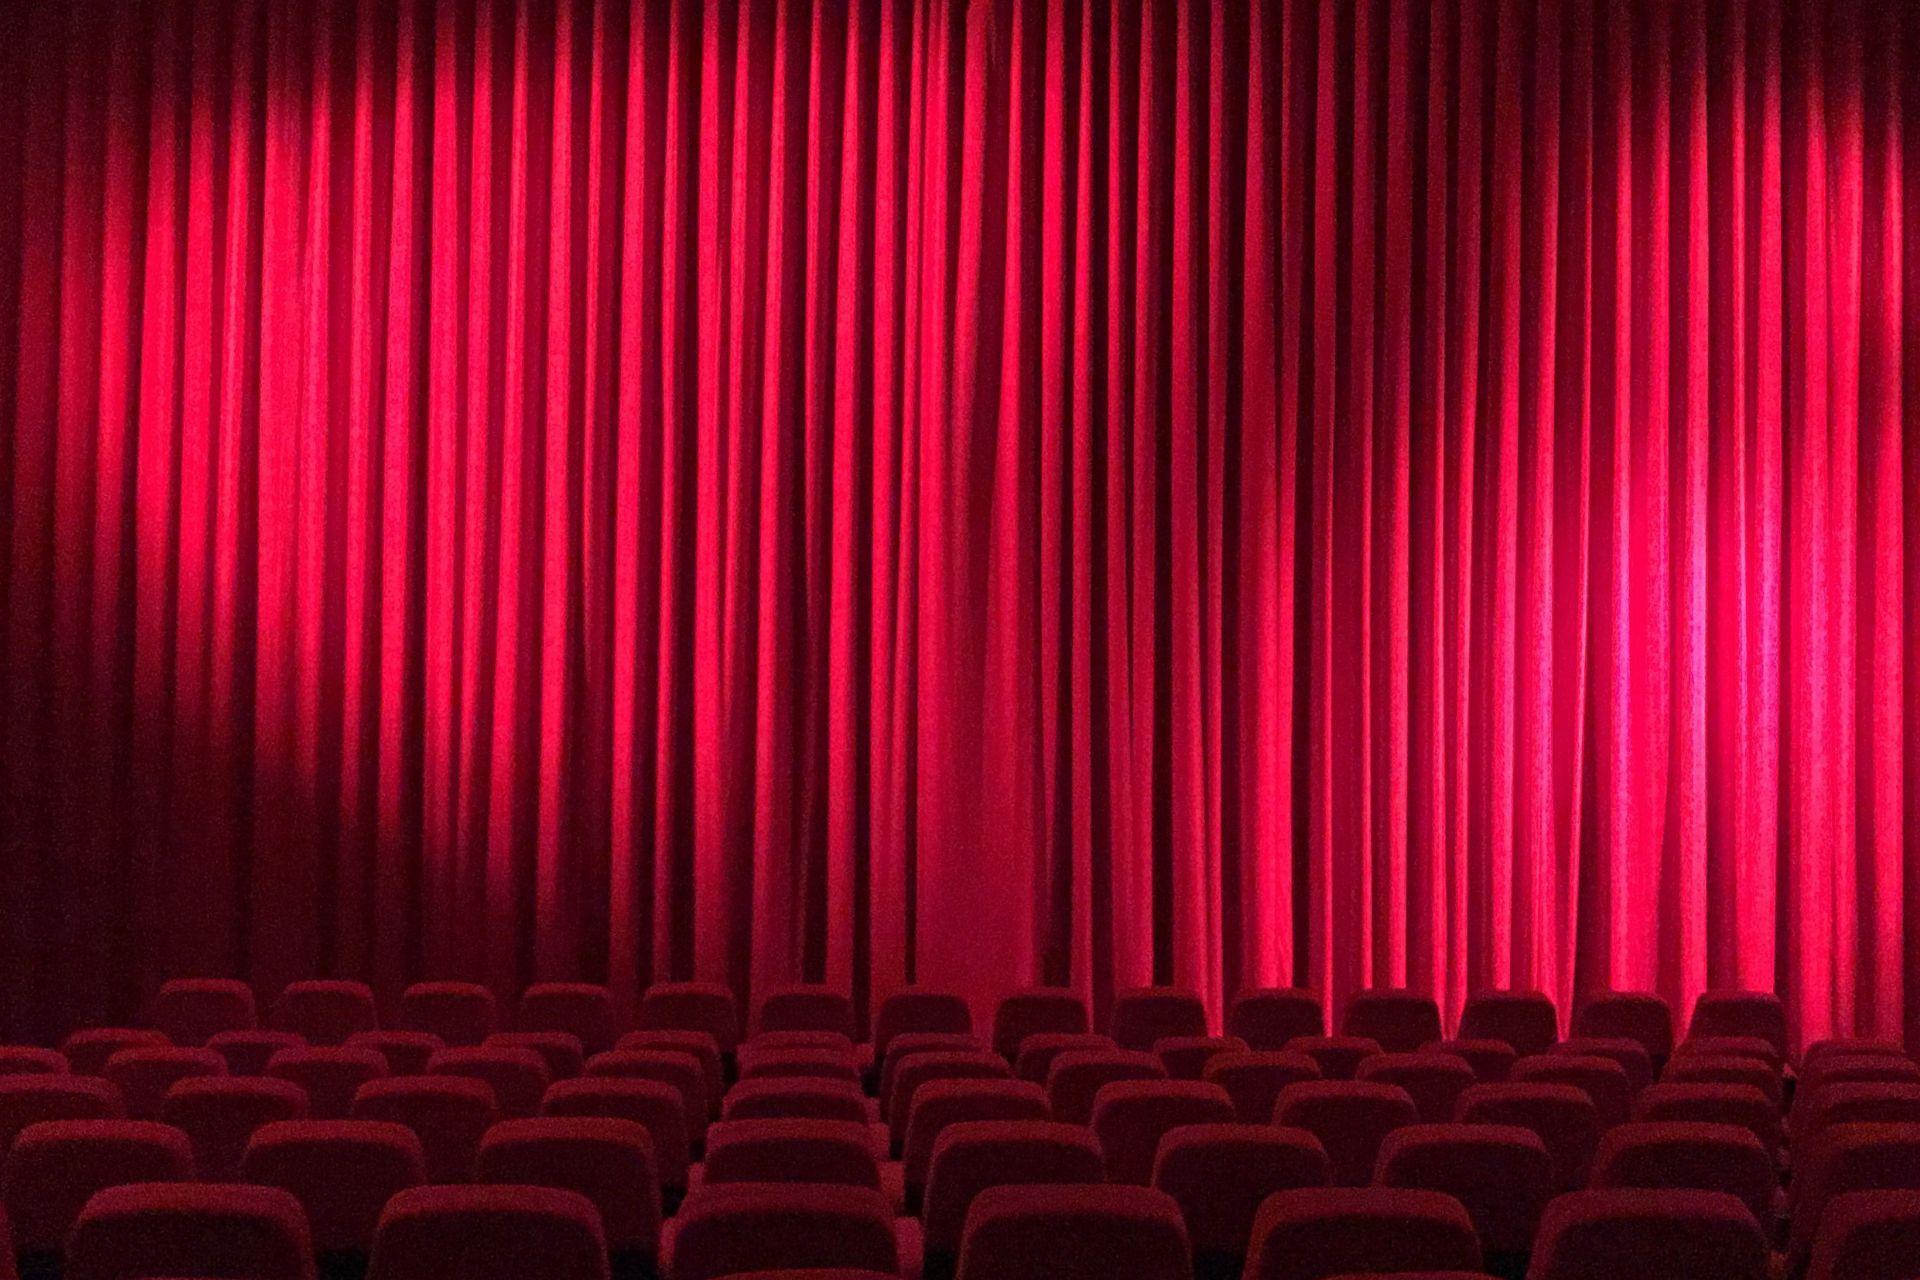 Theaterzaal met rode gordijnen dicht